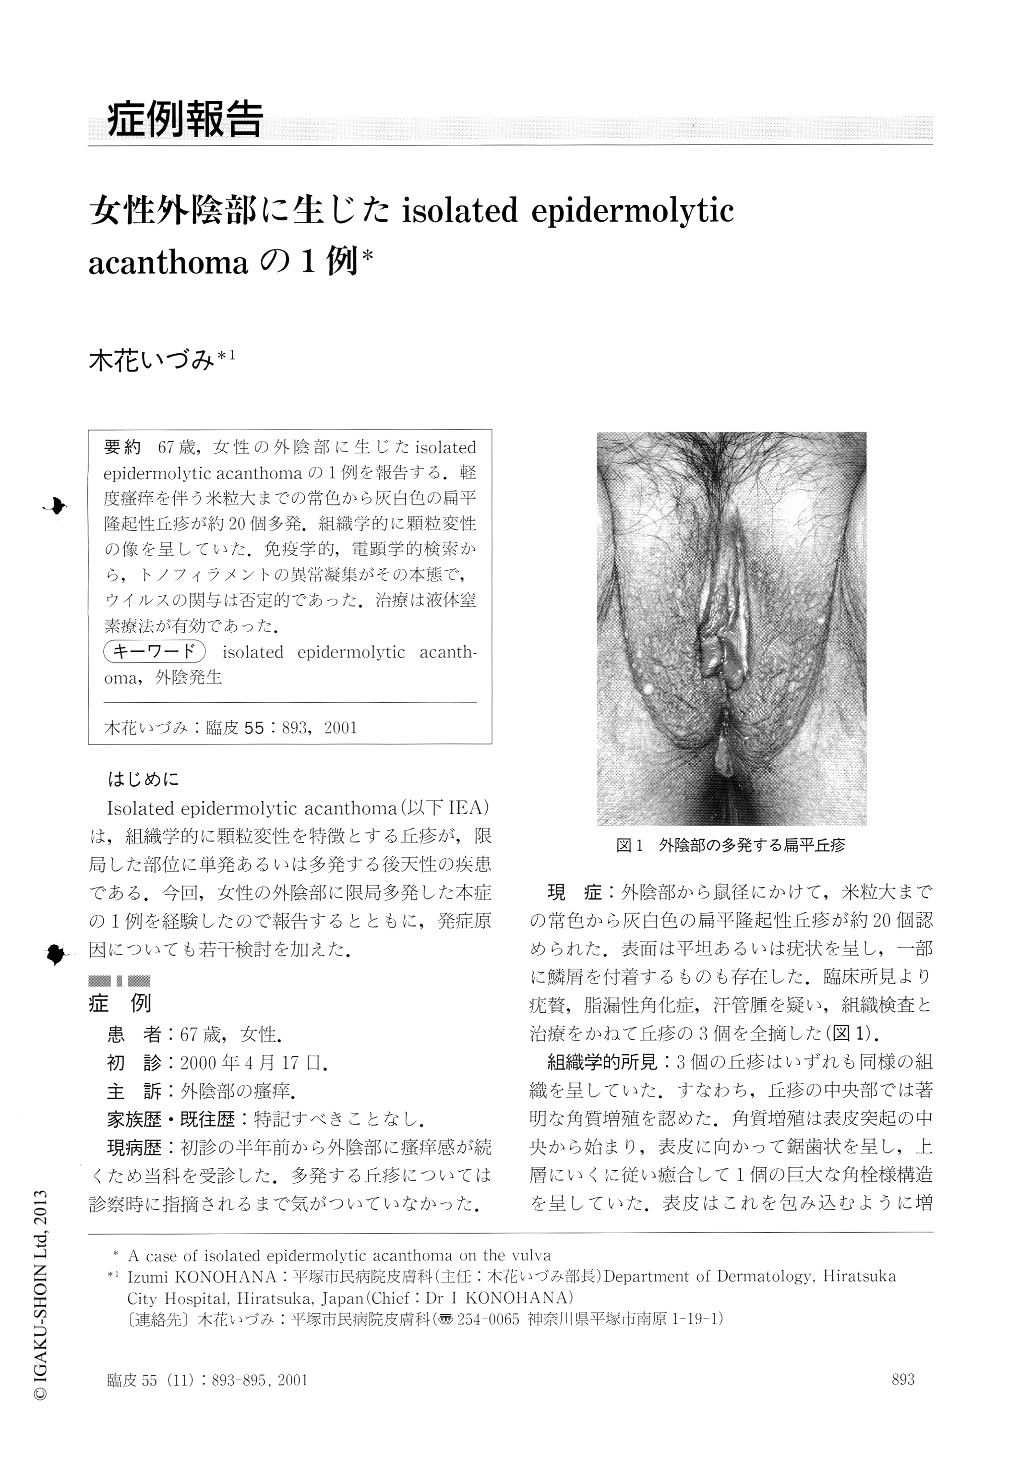 女性外陰部に生じたisolated Epidermolytic Acanthomaの1例 臨床皮膚科 55巻11号 医書 Jp